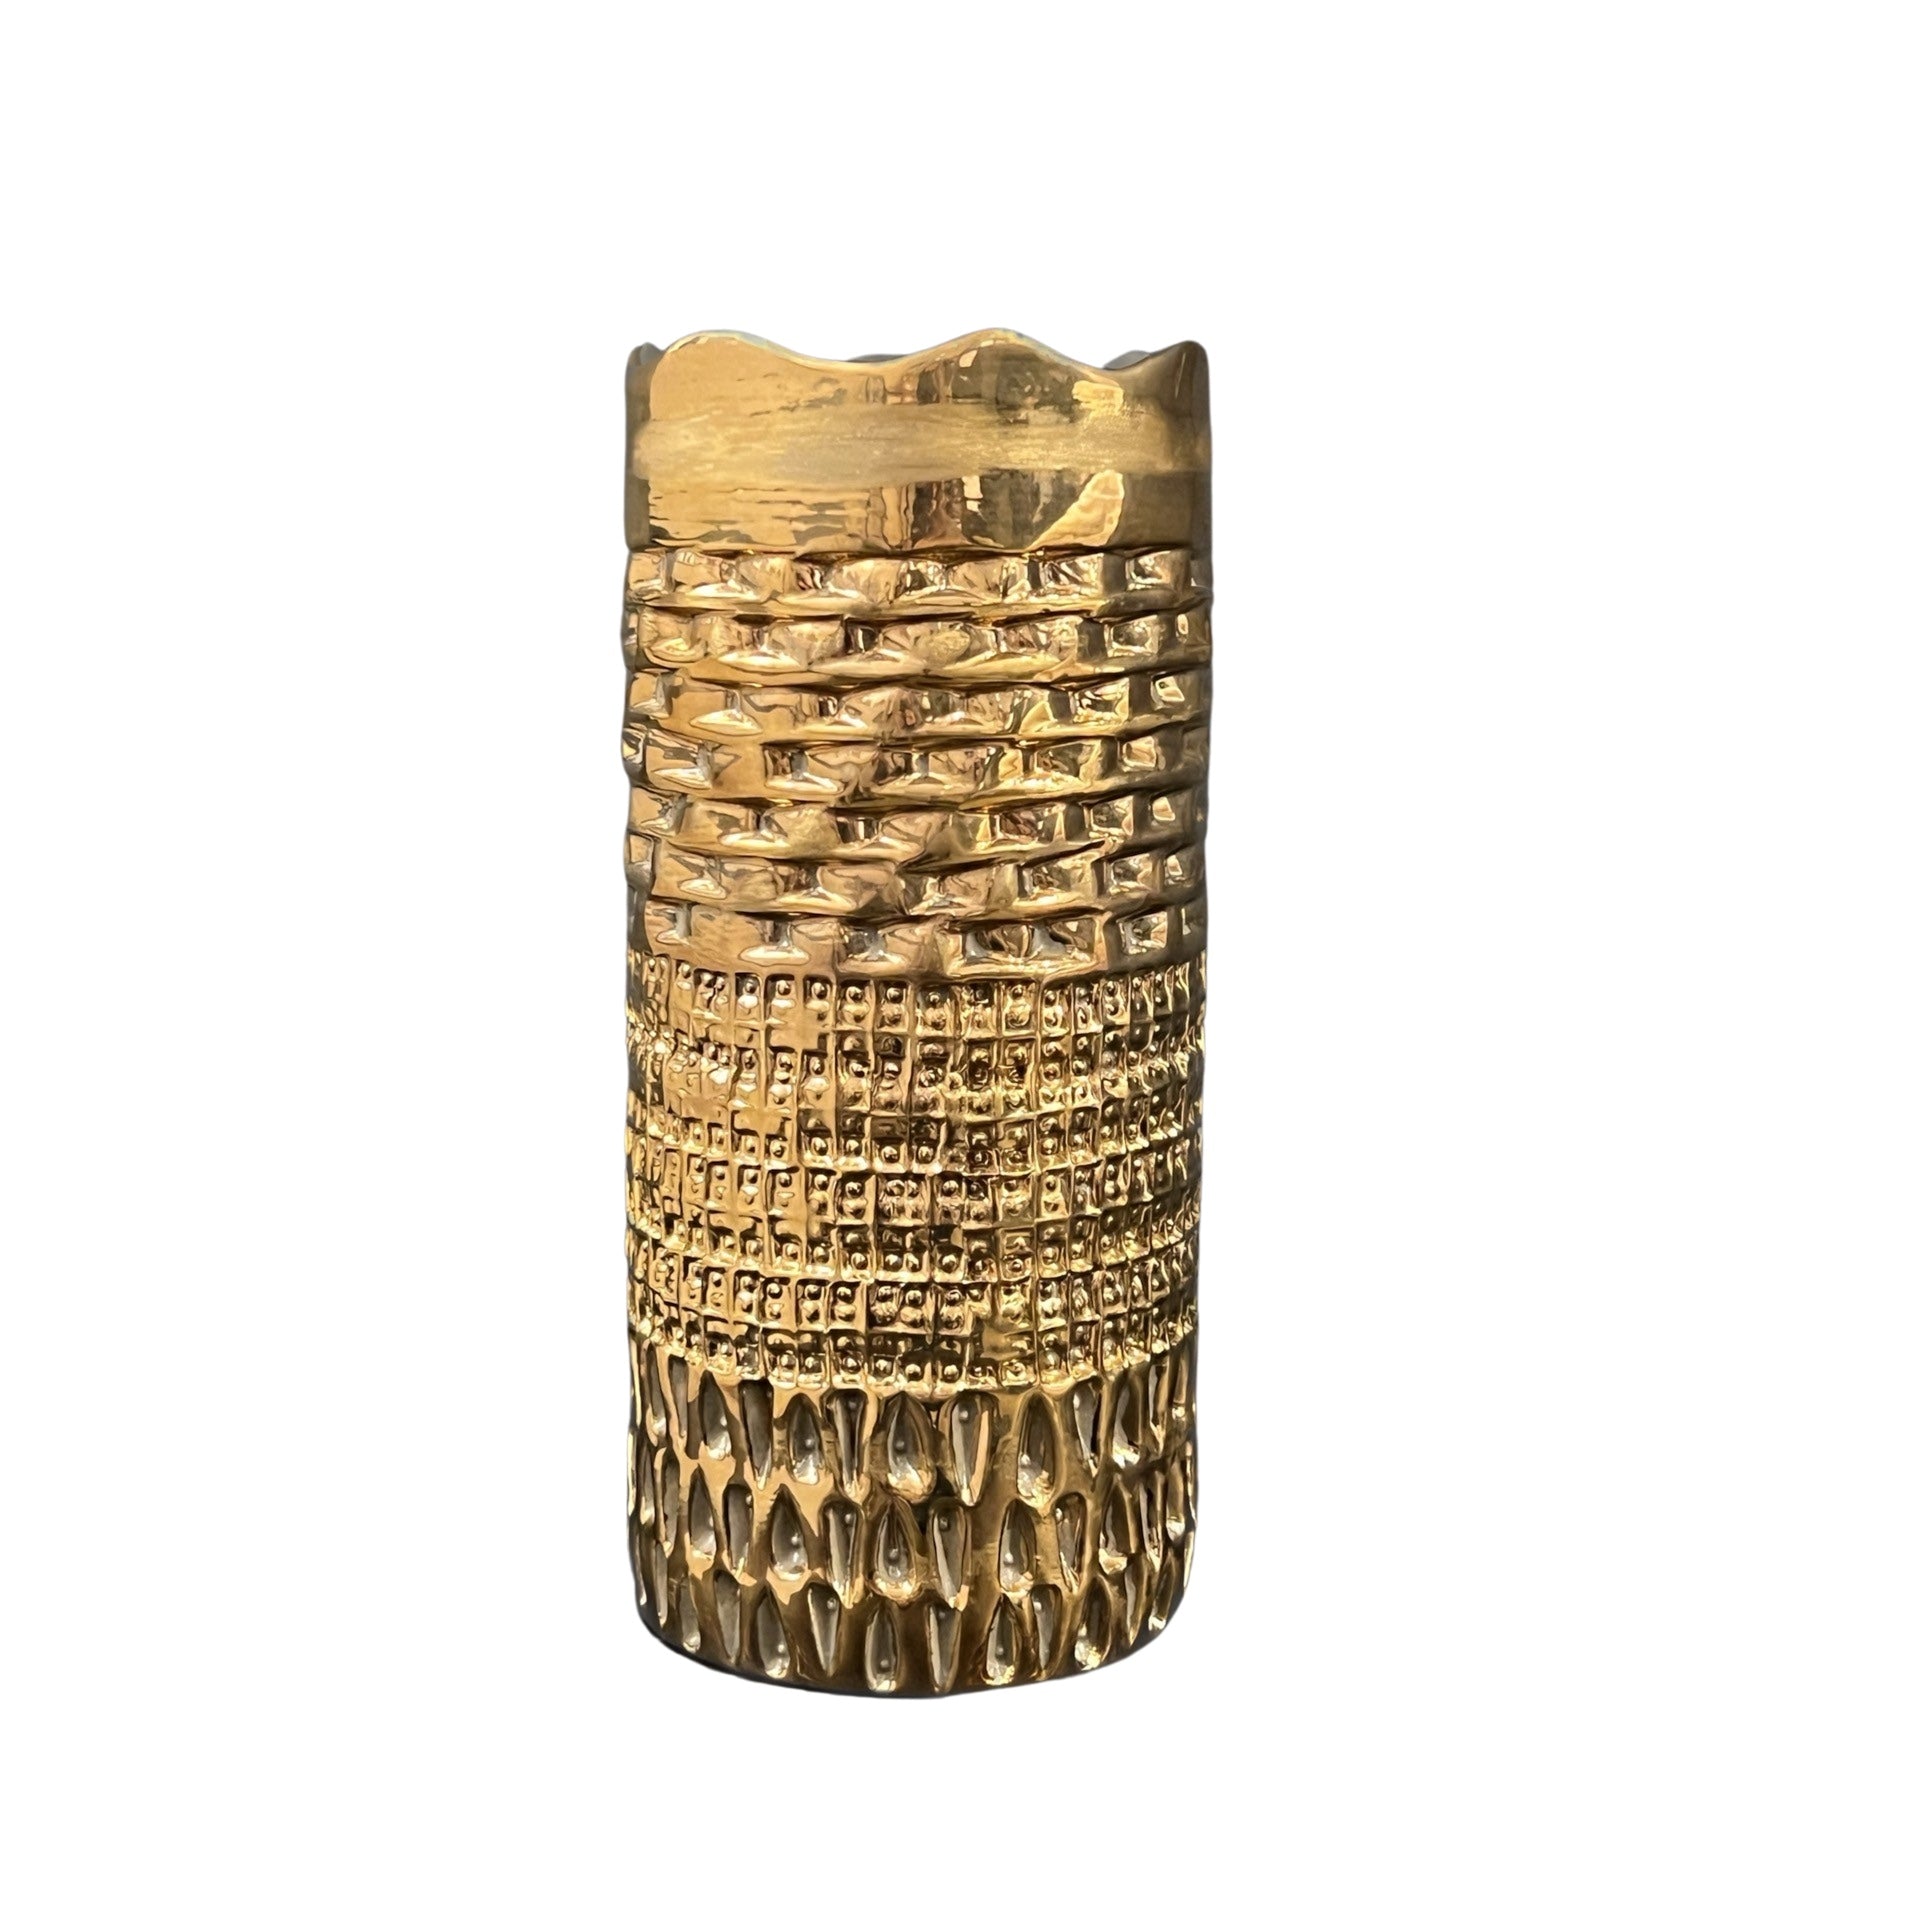 Die Vase Chacha short von LABEL17 ist aus Keramik und vergoldet